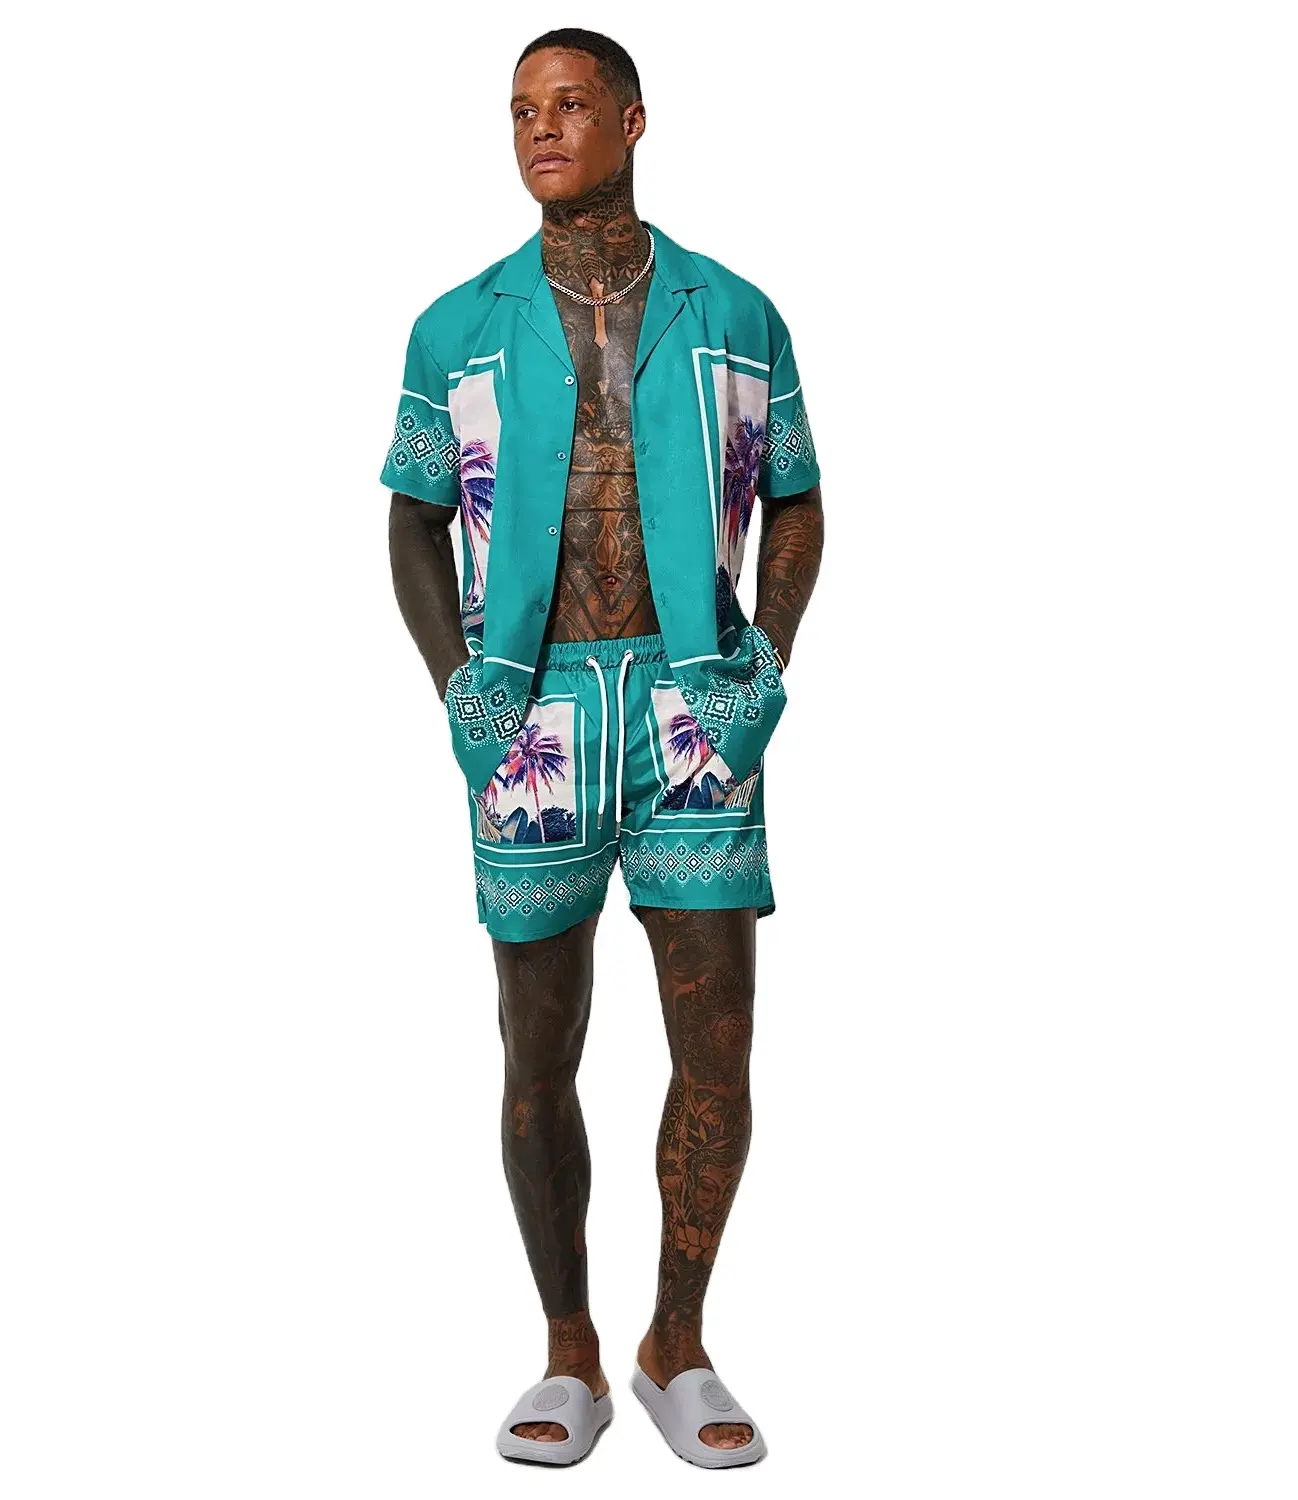 Özel yeni tasarım rahat düğme aşağı Tshirt şort setleri erkek hızlı kuru şort & T shirt setleri erkek Hawaiian şort setleri